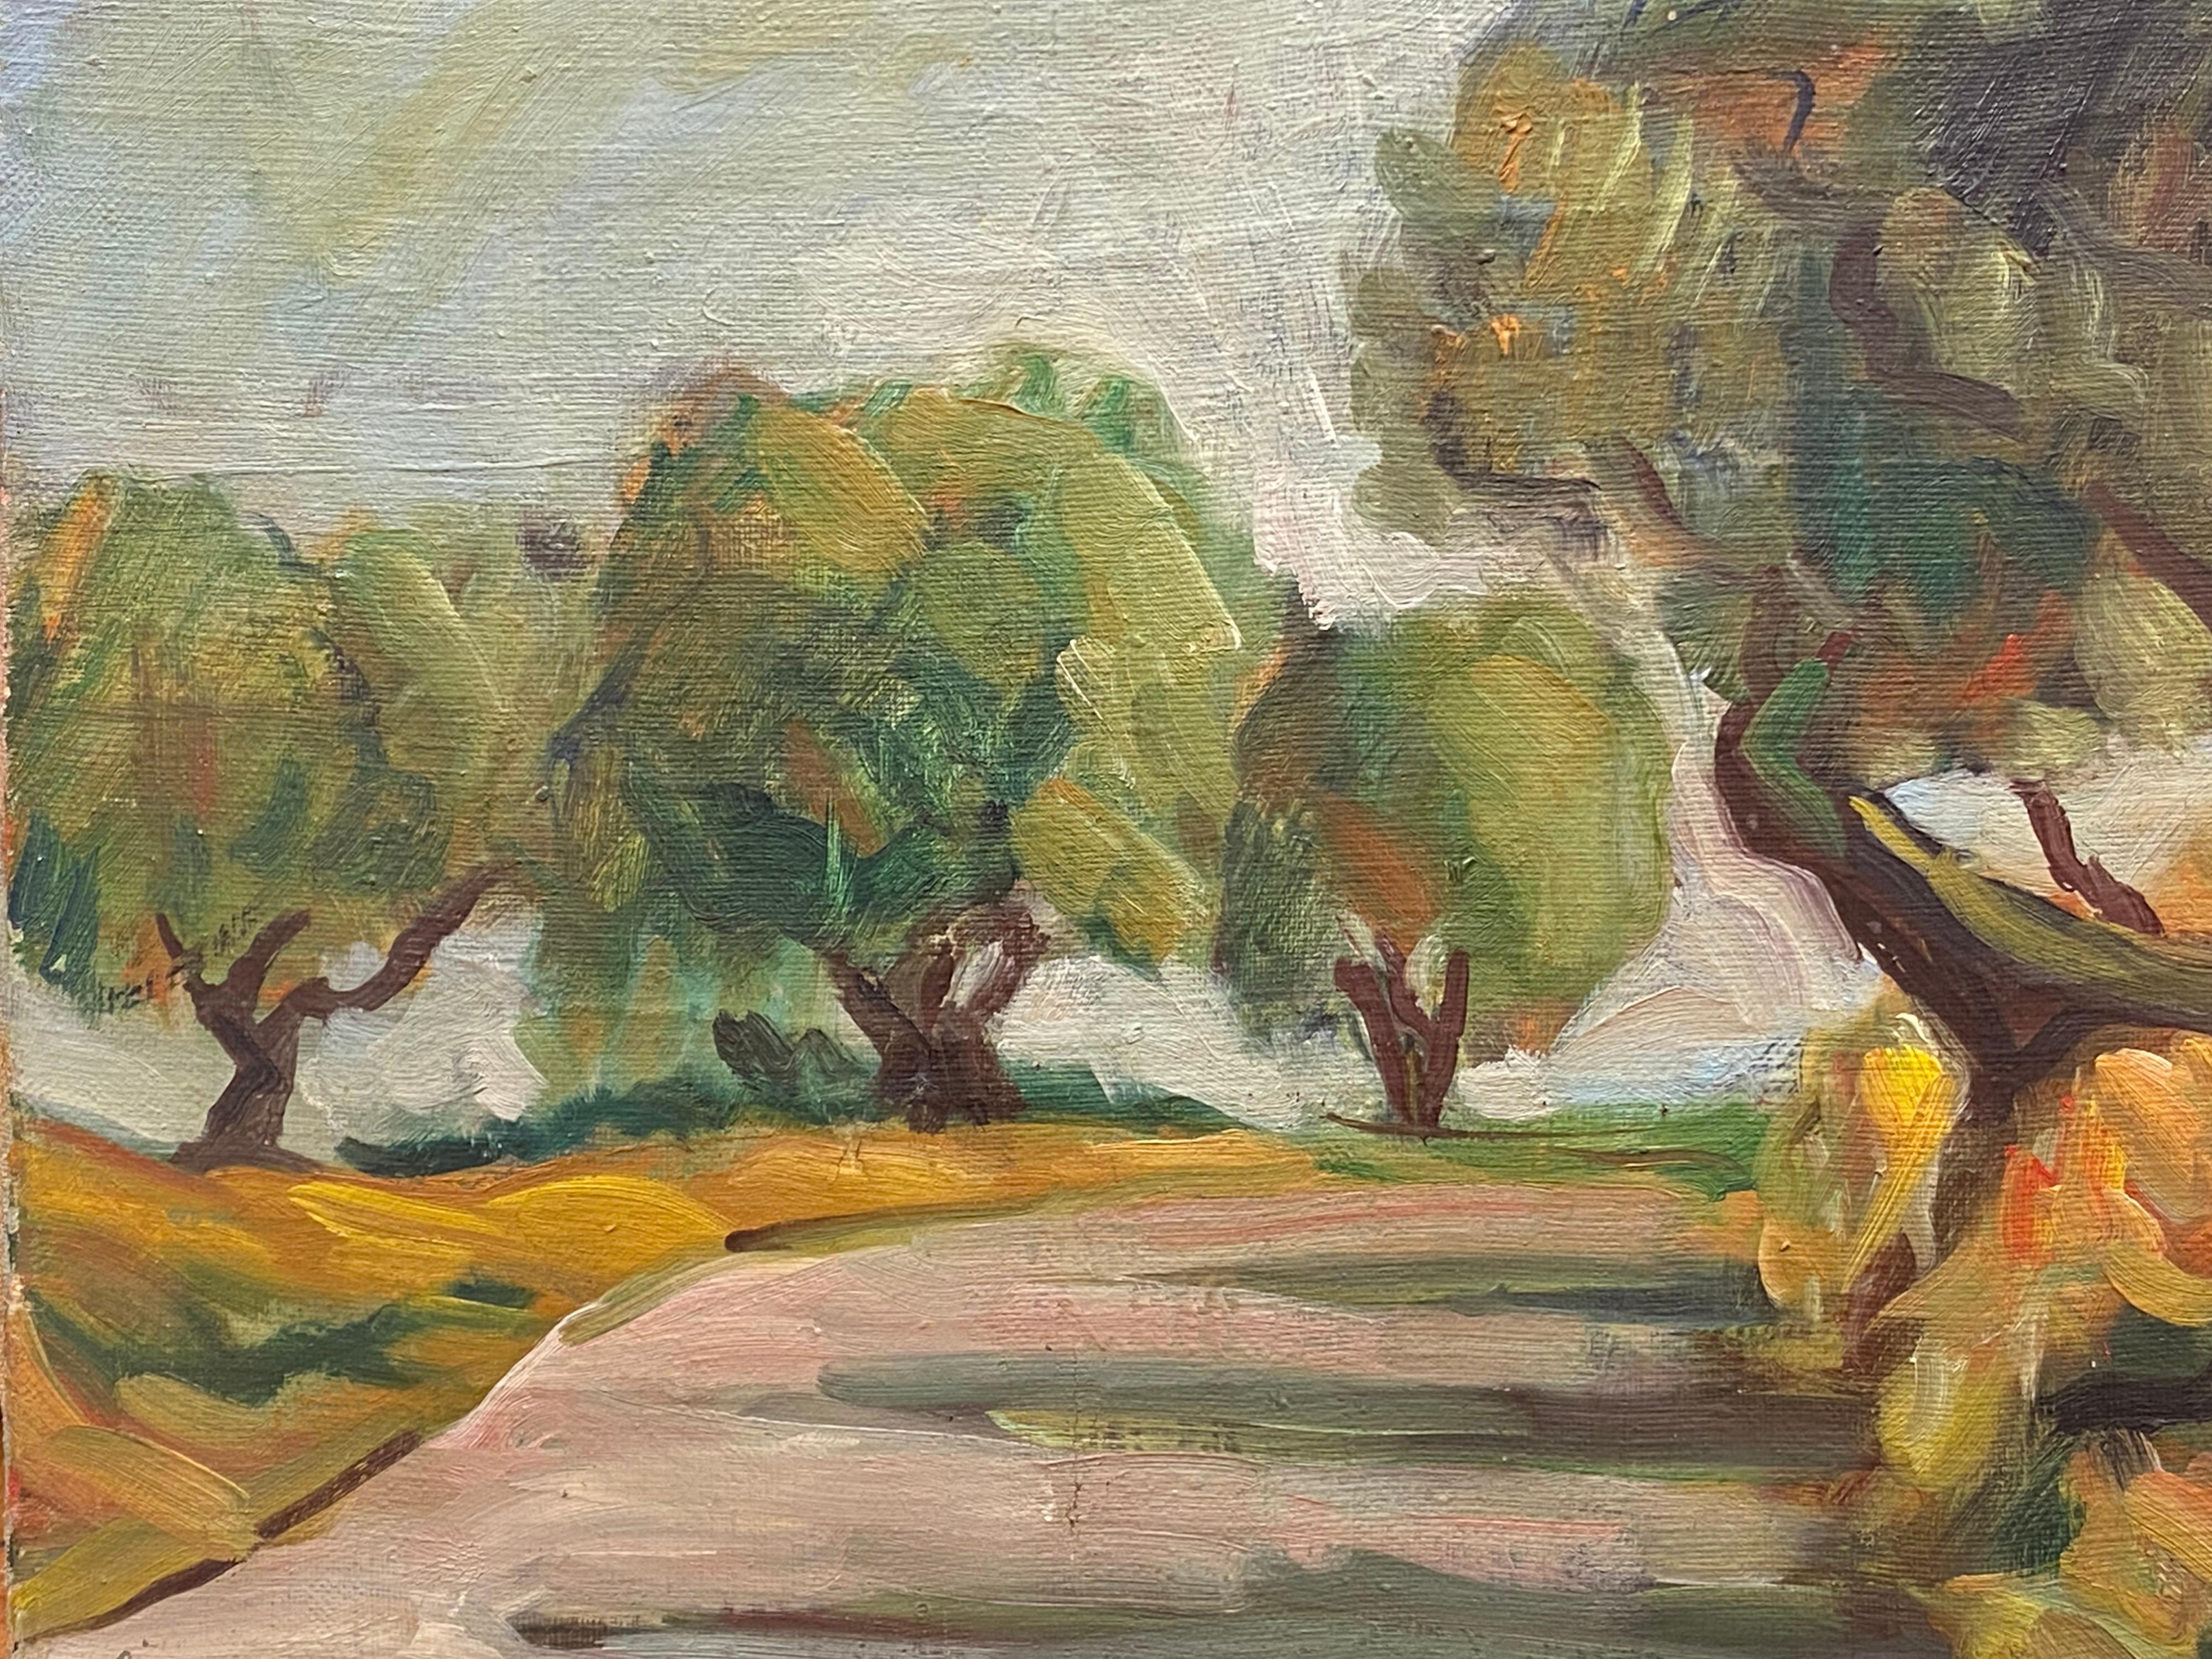 Huile impressionniste française des années 1950 - Chemin de campagne provençal éclairé par un soleil - Painting de 1950's French